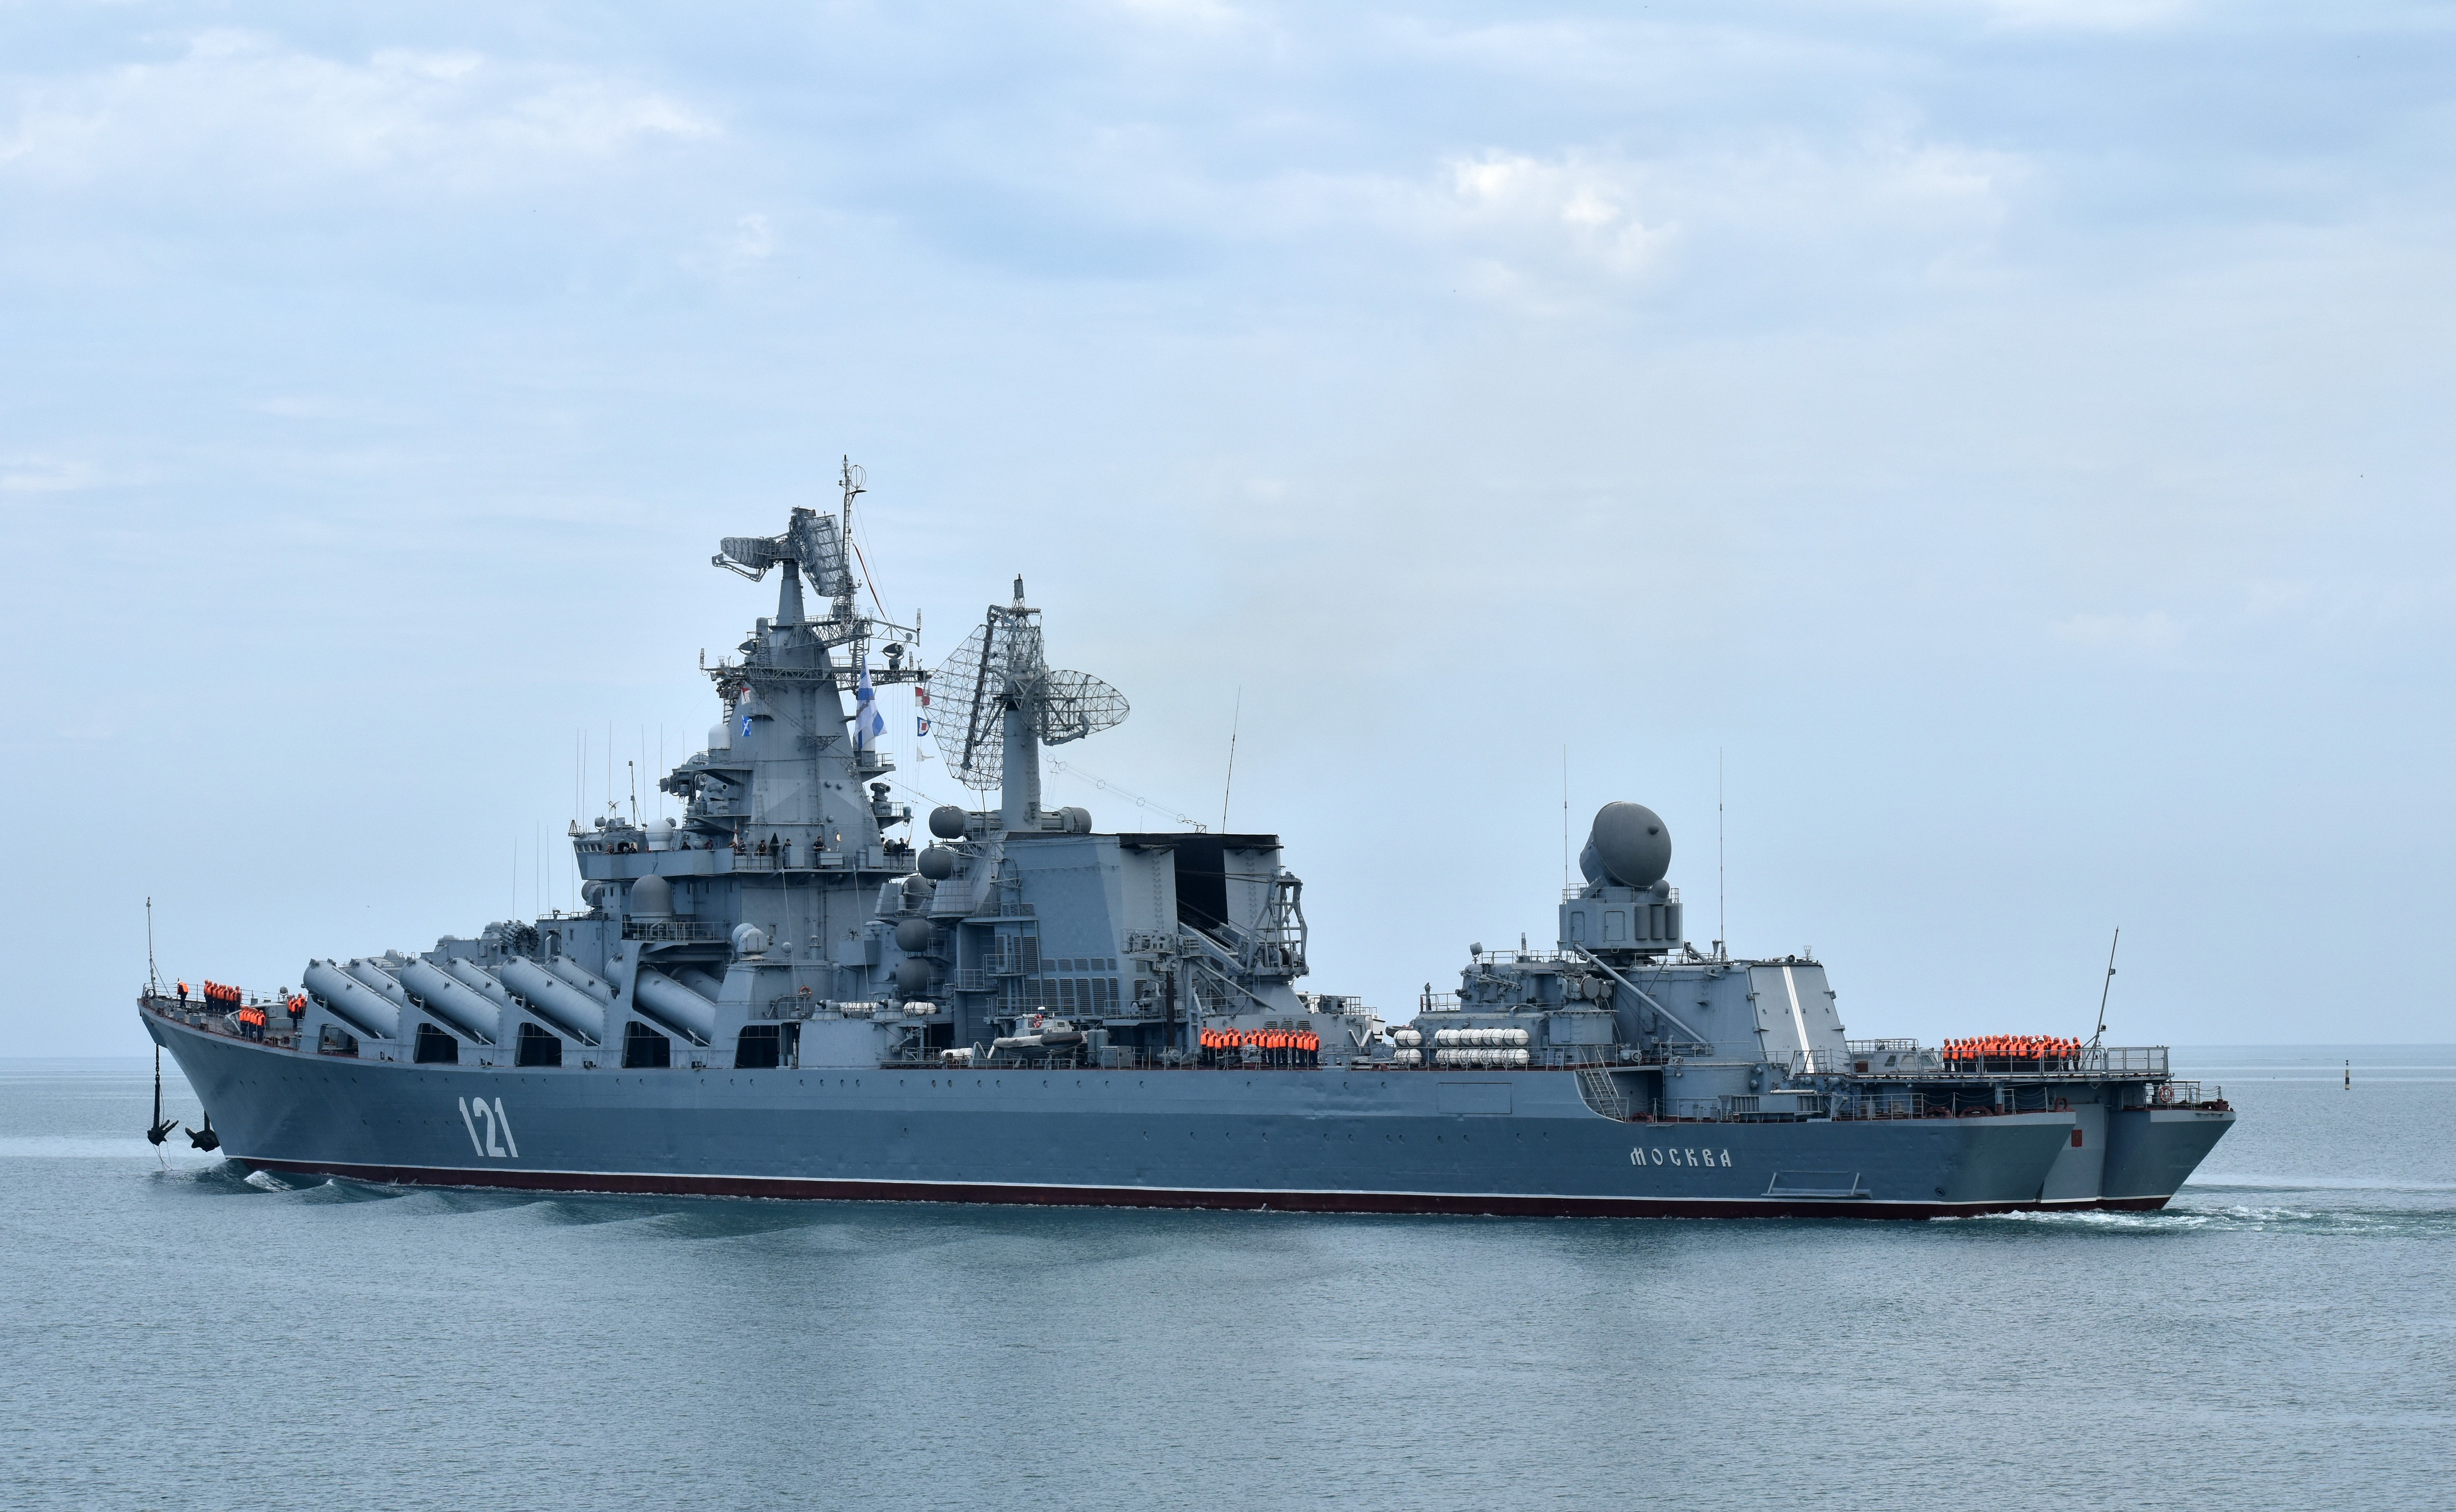 俄罗斯黑海舰队旗舰,"莫斯科"号导弹巡洋舰